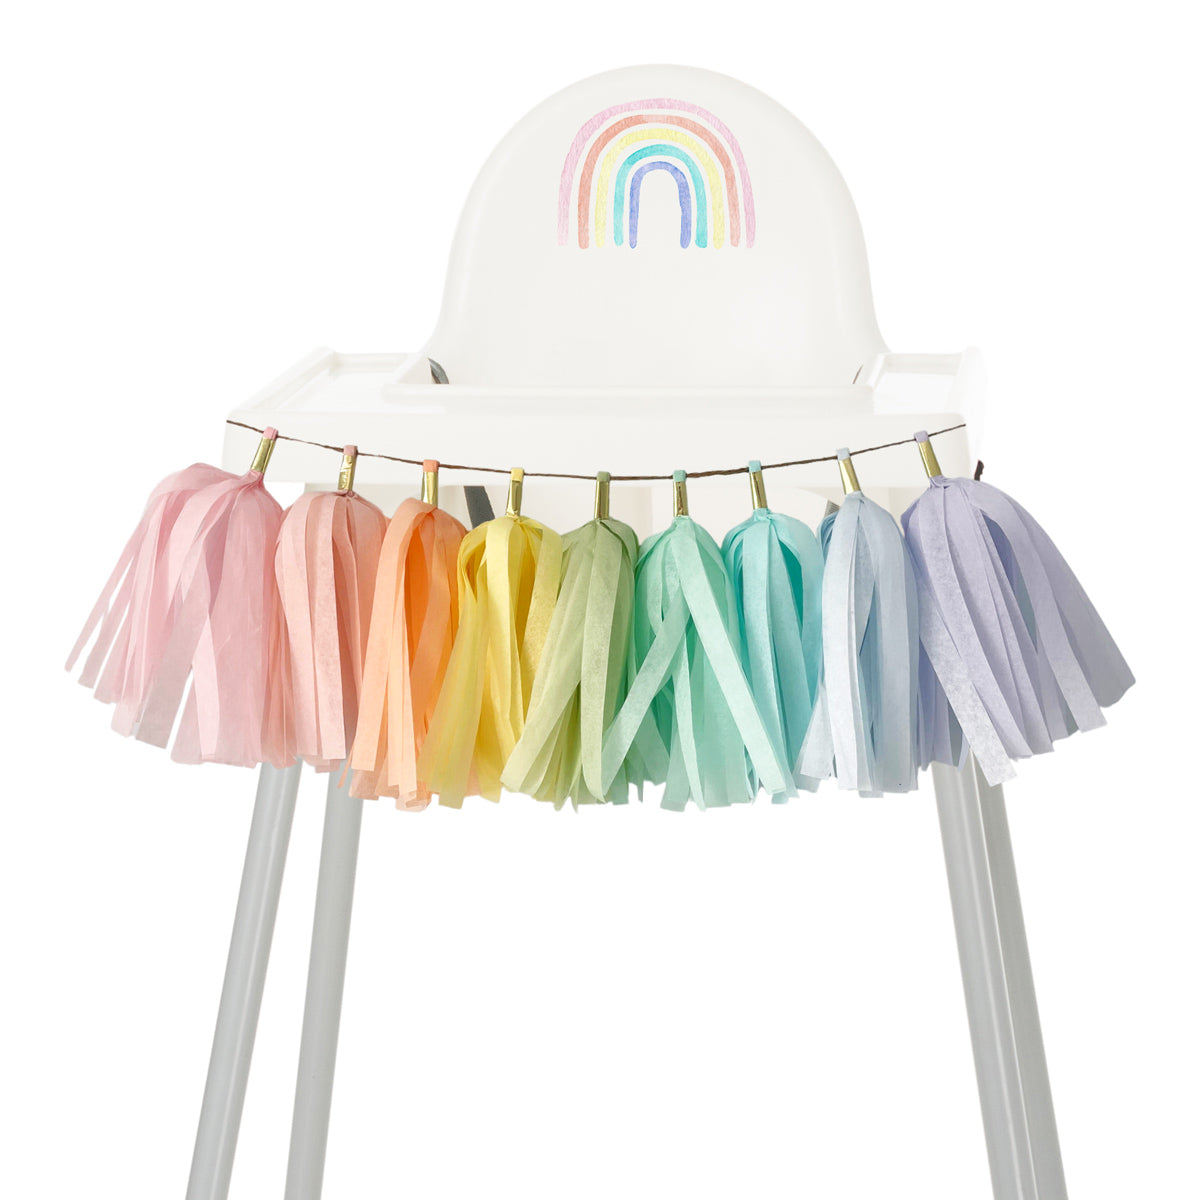 Classic Rainbow Balloon Garland Kit - Kids Rainbow Birthday Party